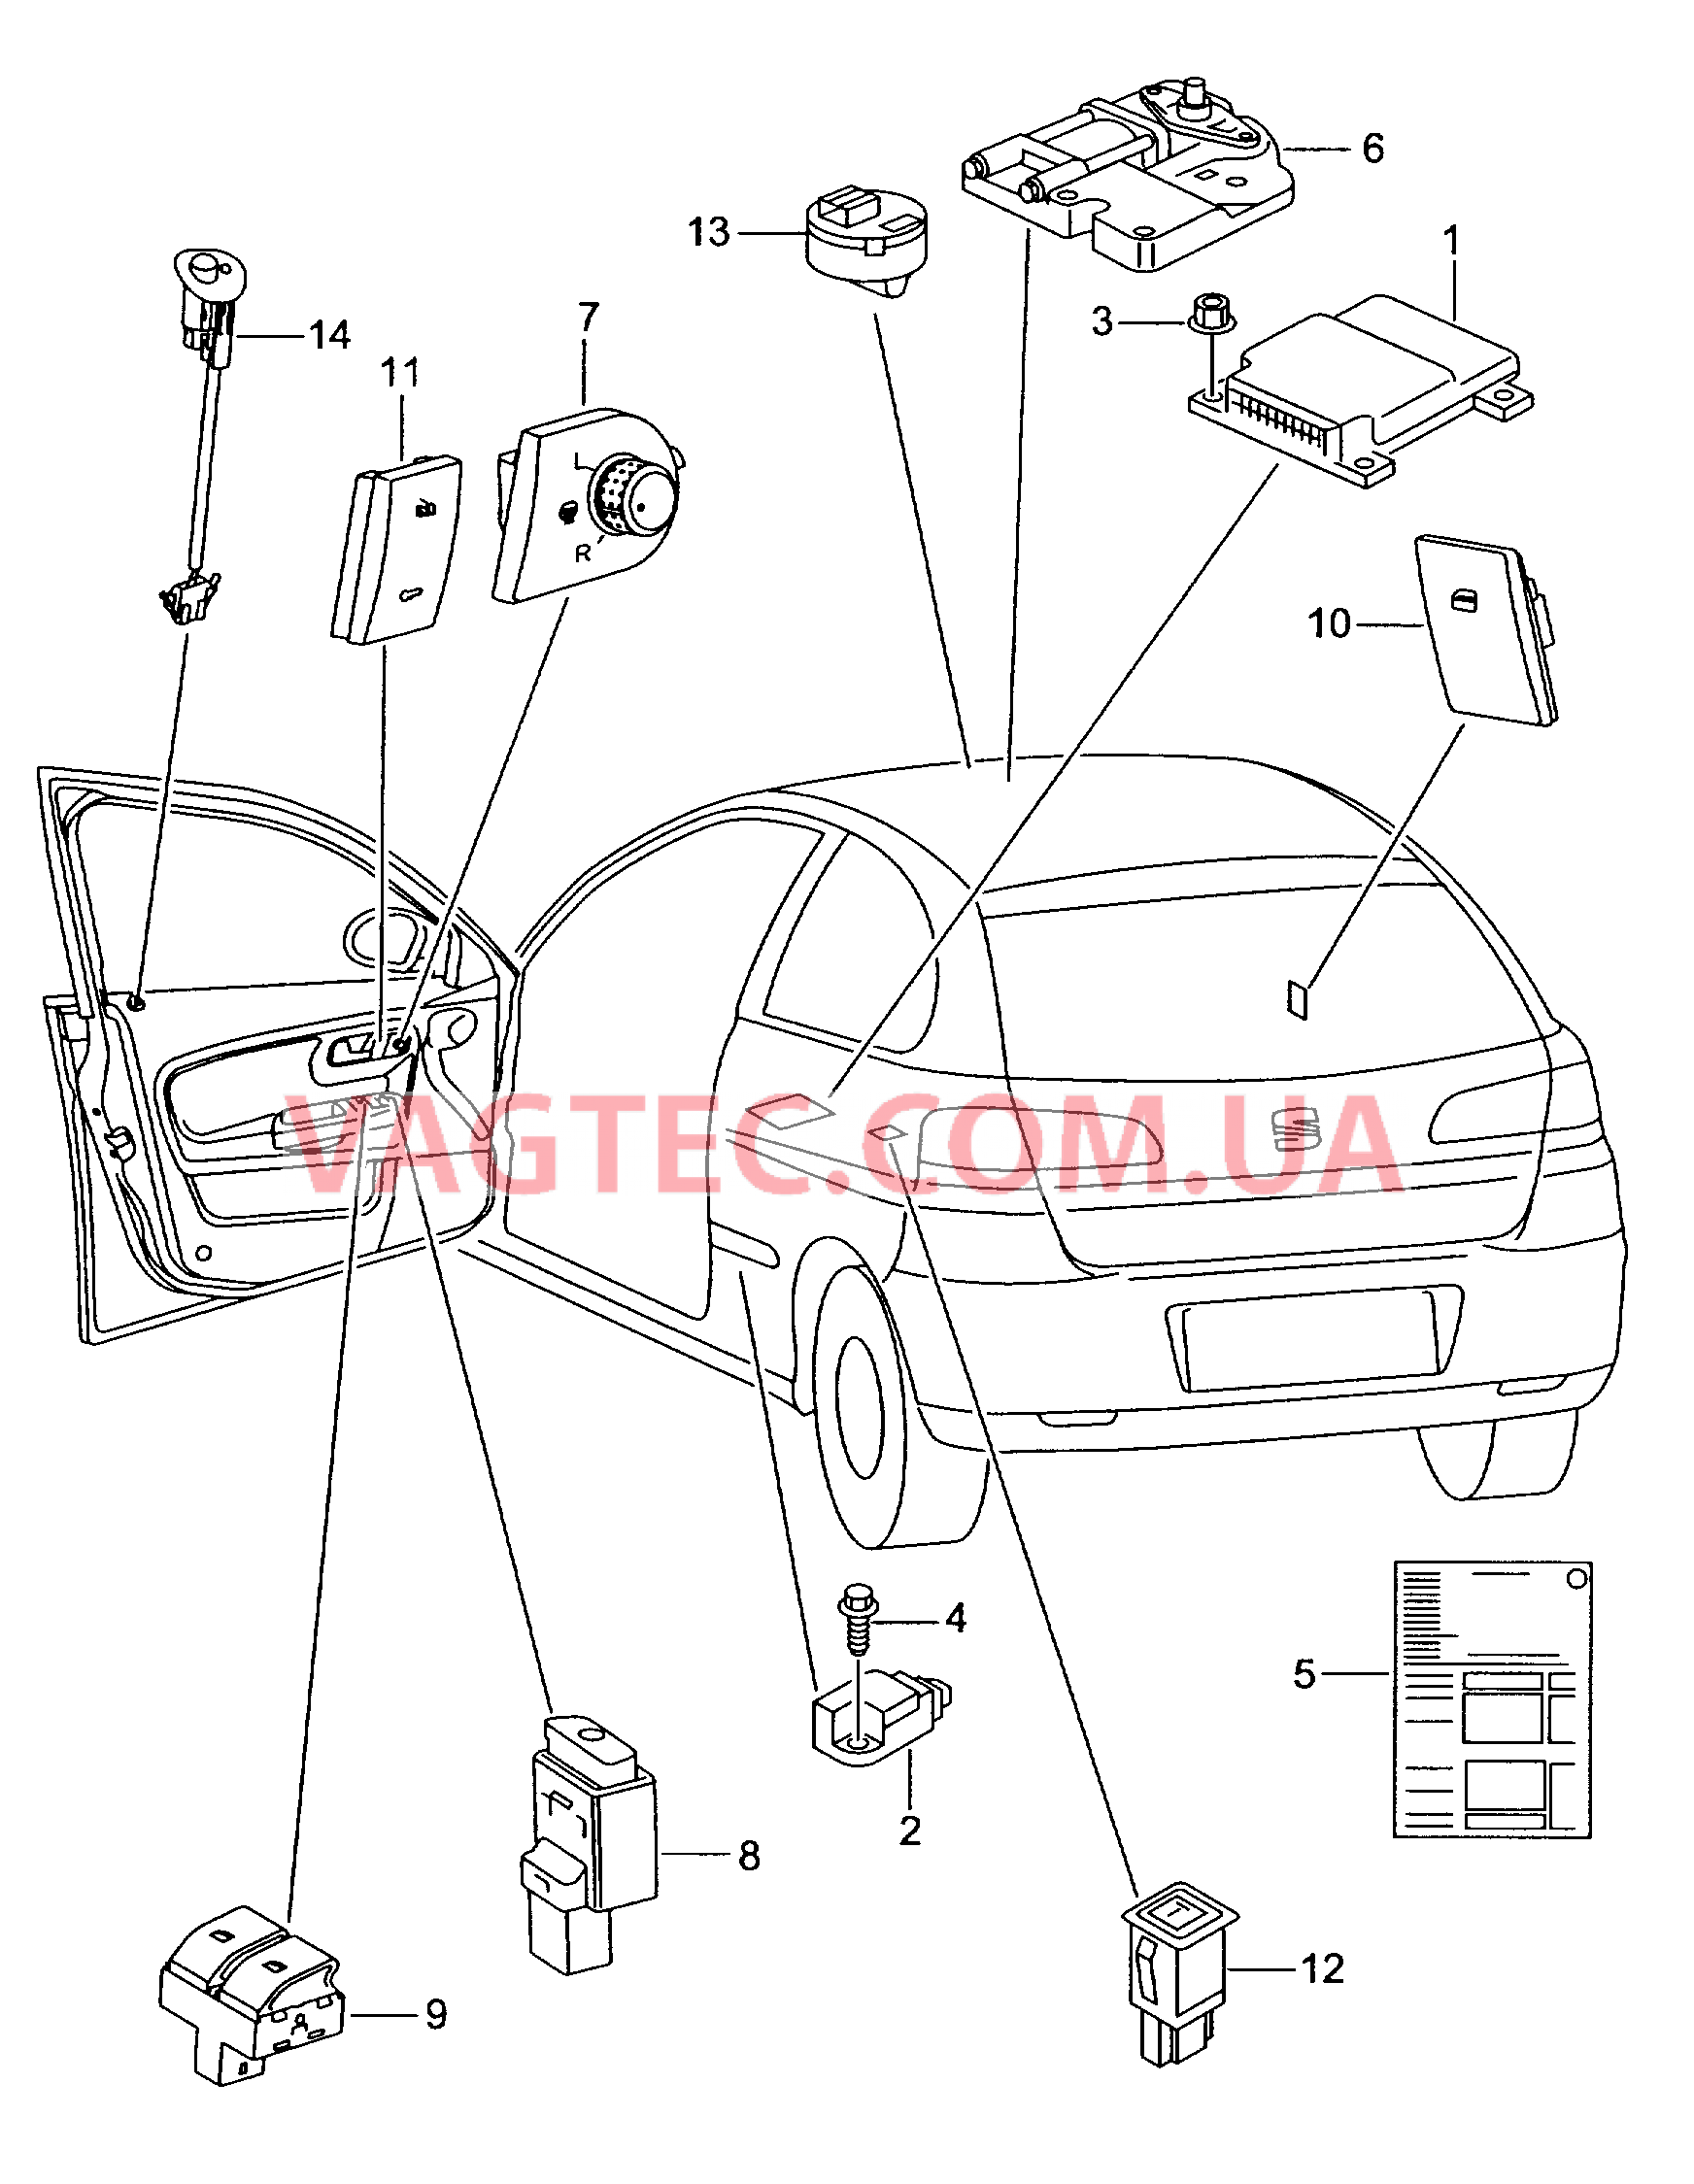 Электродетали для подуш.безоп. Мотор привода люка Выключатель в обивке двери Лампа, контрольная для противоугонной системы  для SEAT CO 2008